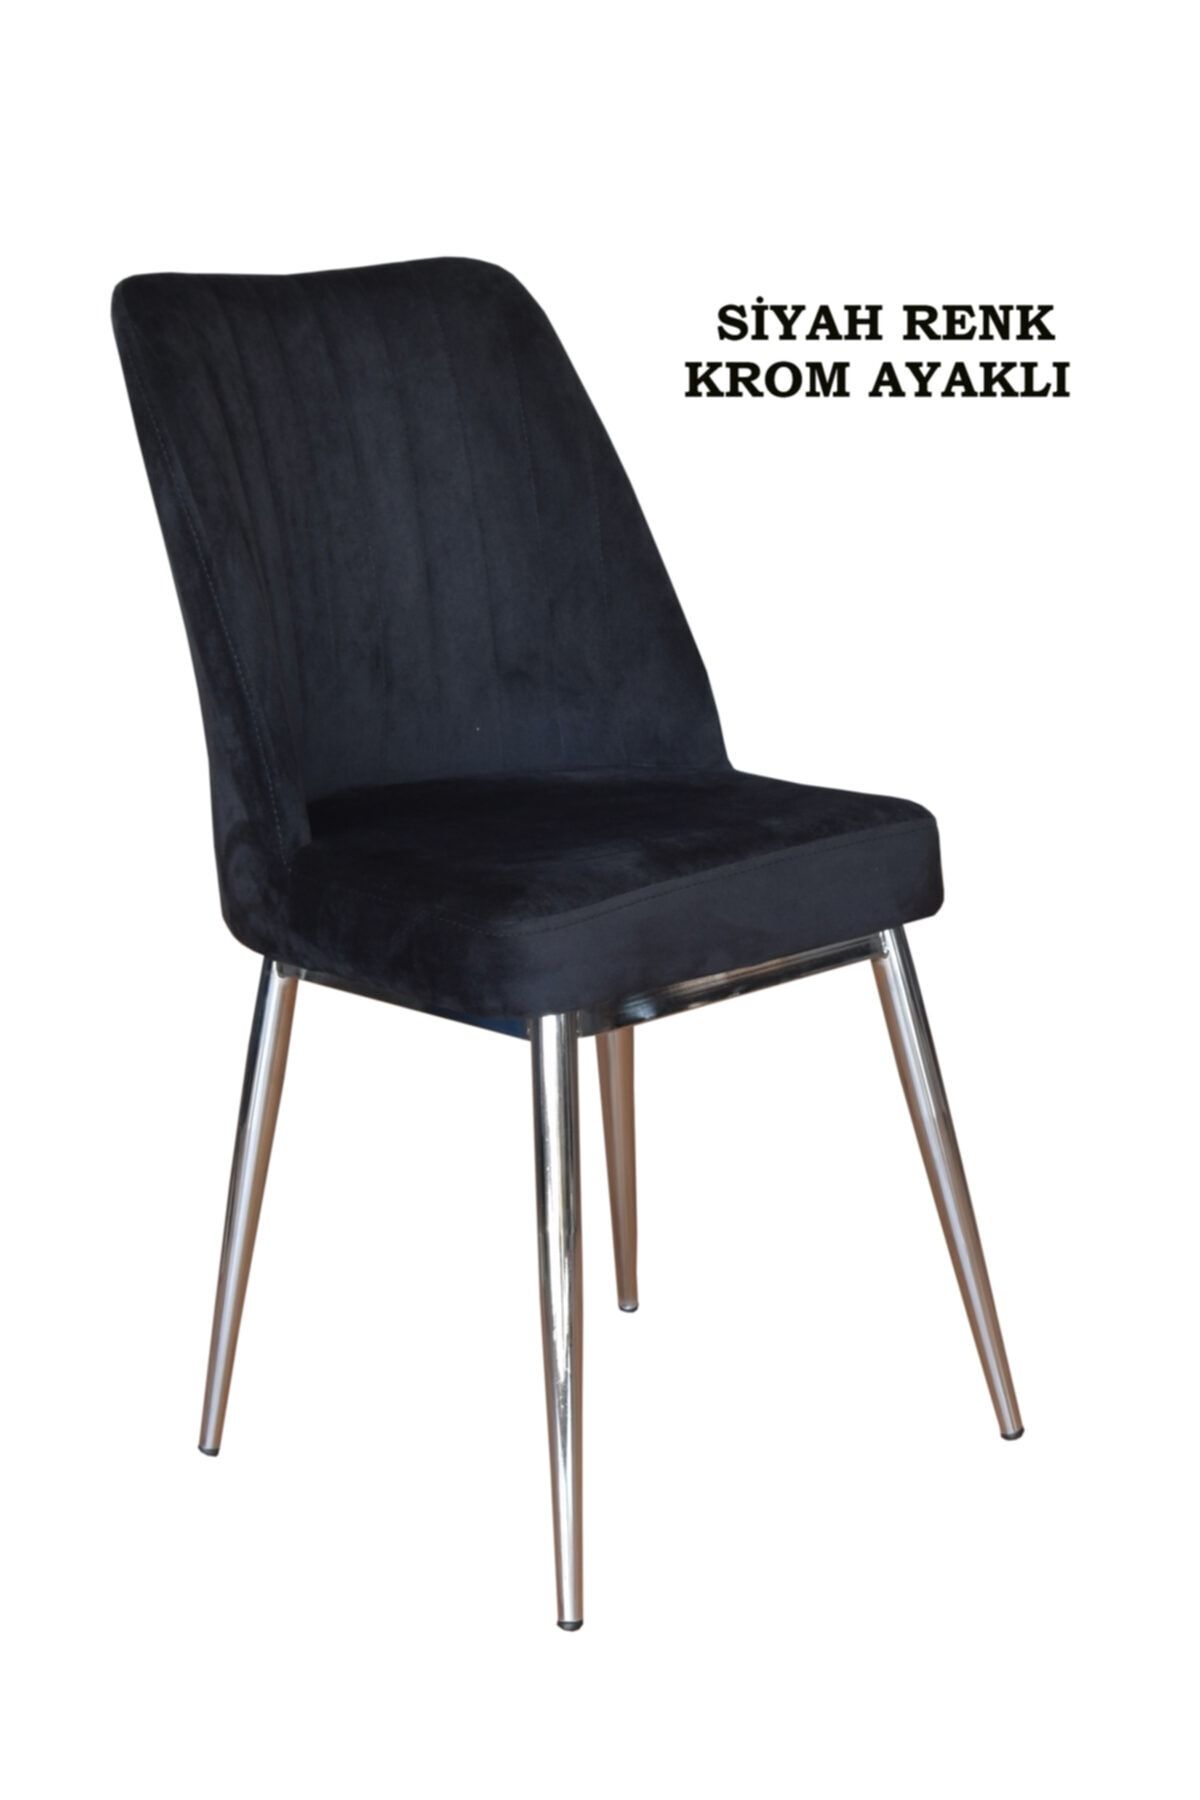 Ankhira Elit Sandalye, Mutfak Ve Salon Sandalyesi, Silinebilir Siyah Renk Kumaş, Krom Ayaklı